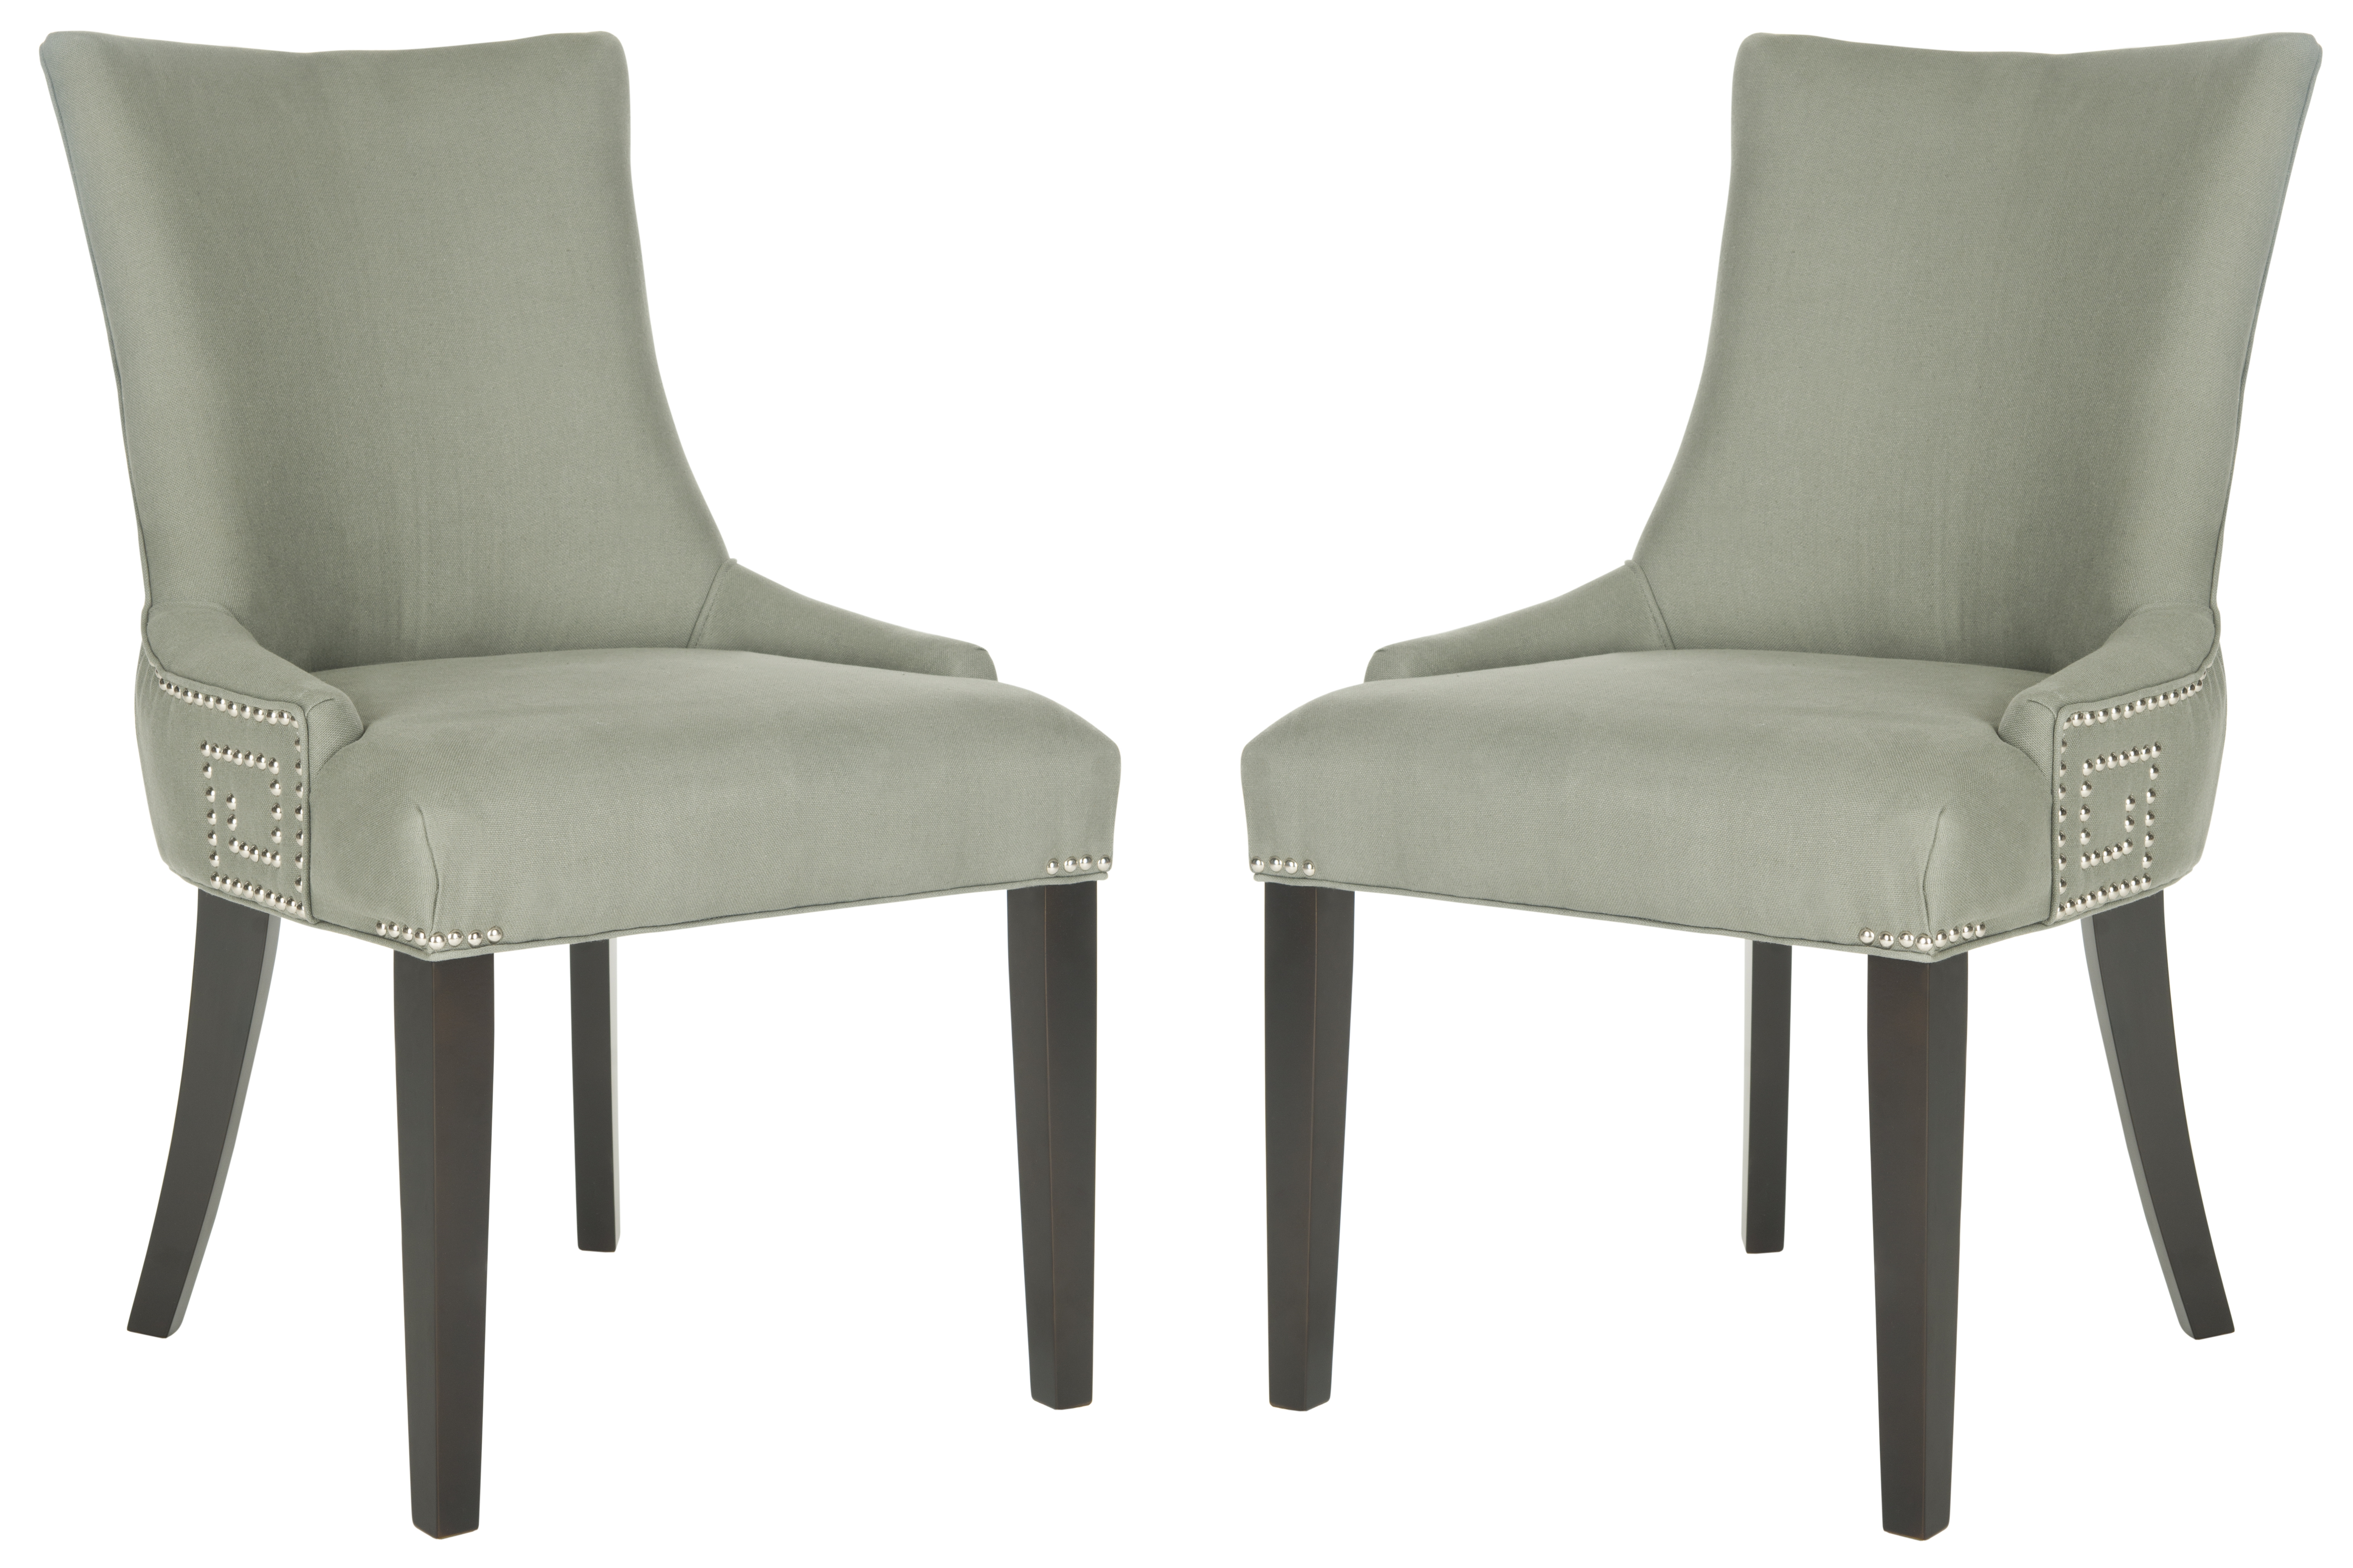 Gretchen 20''H Side Chair (Set Of 2) - Silver Nail Heads - Granite/Espresso - Arlo Home - Arlo Home